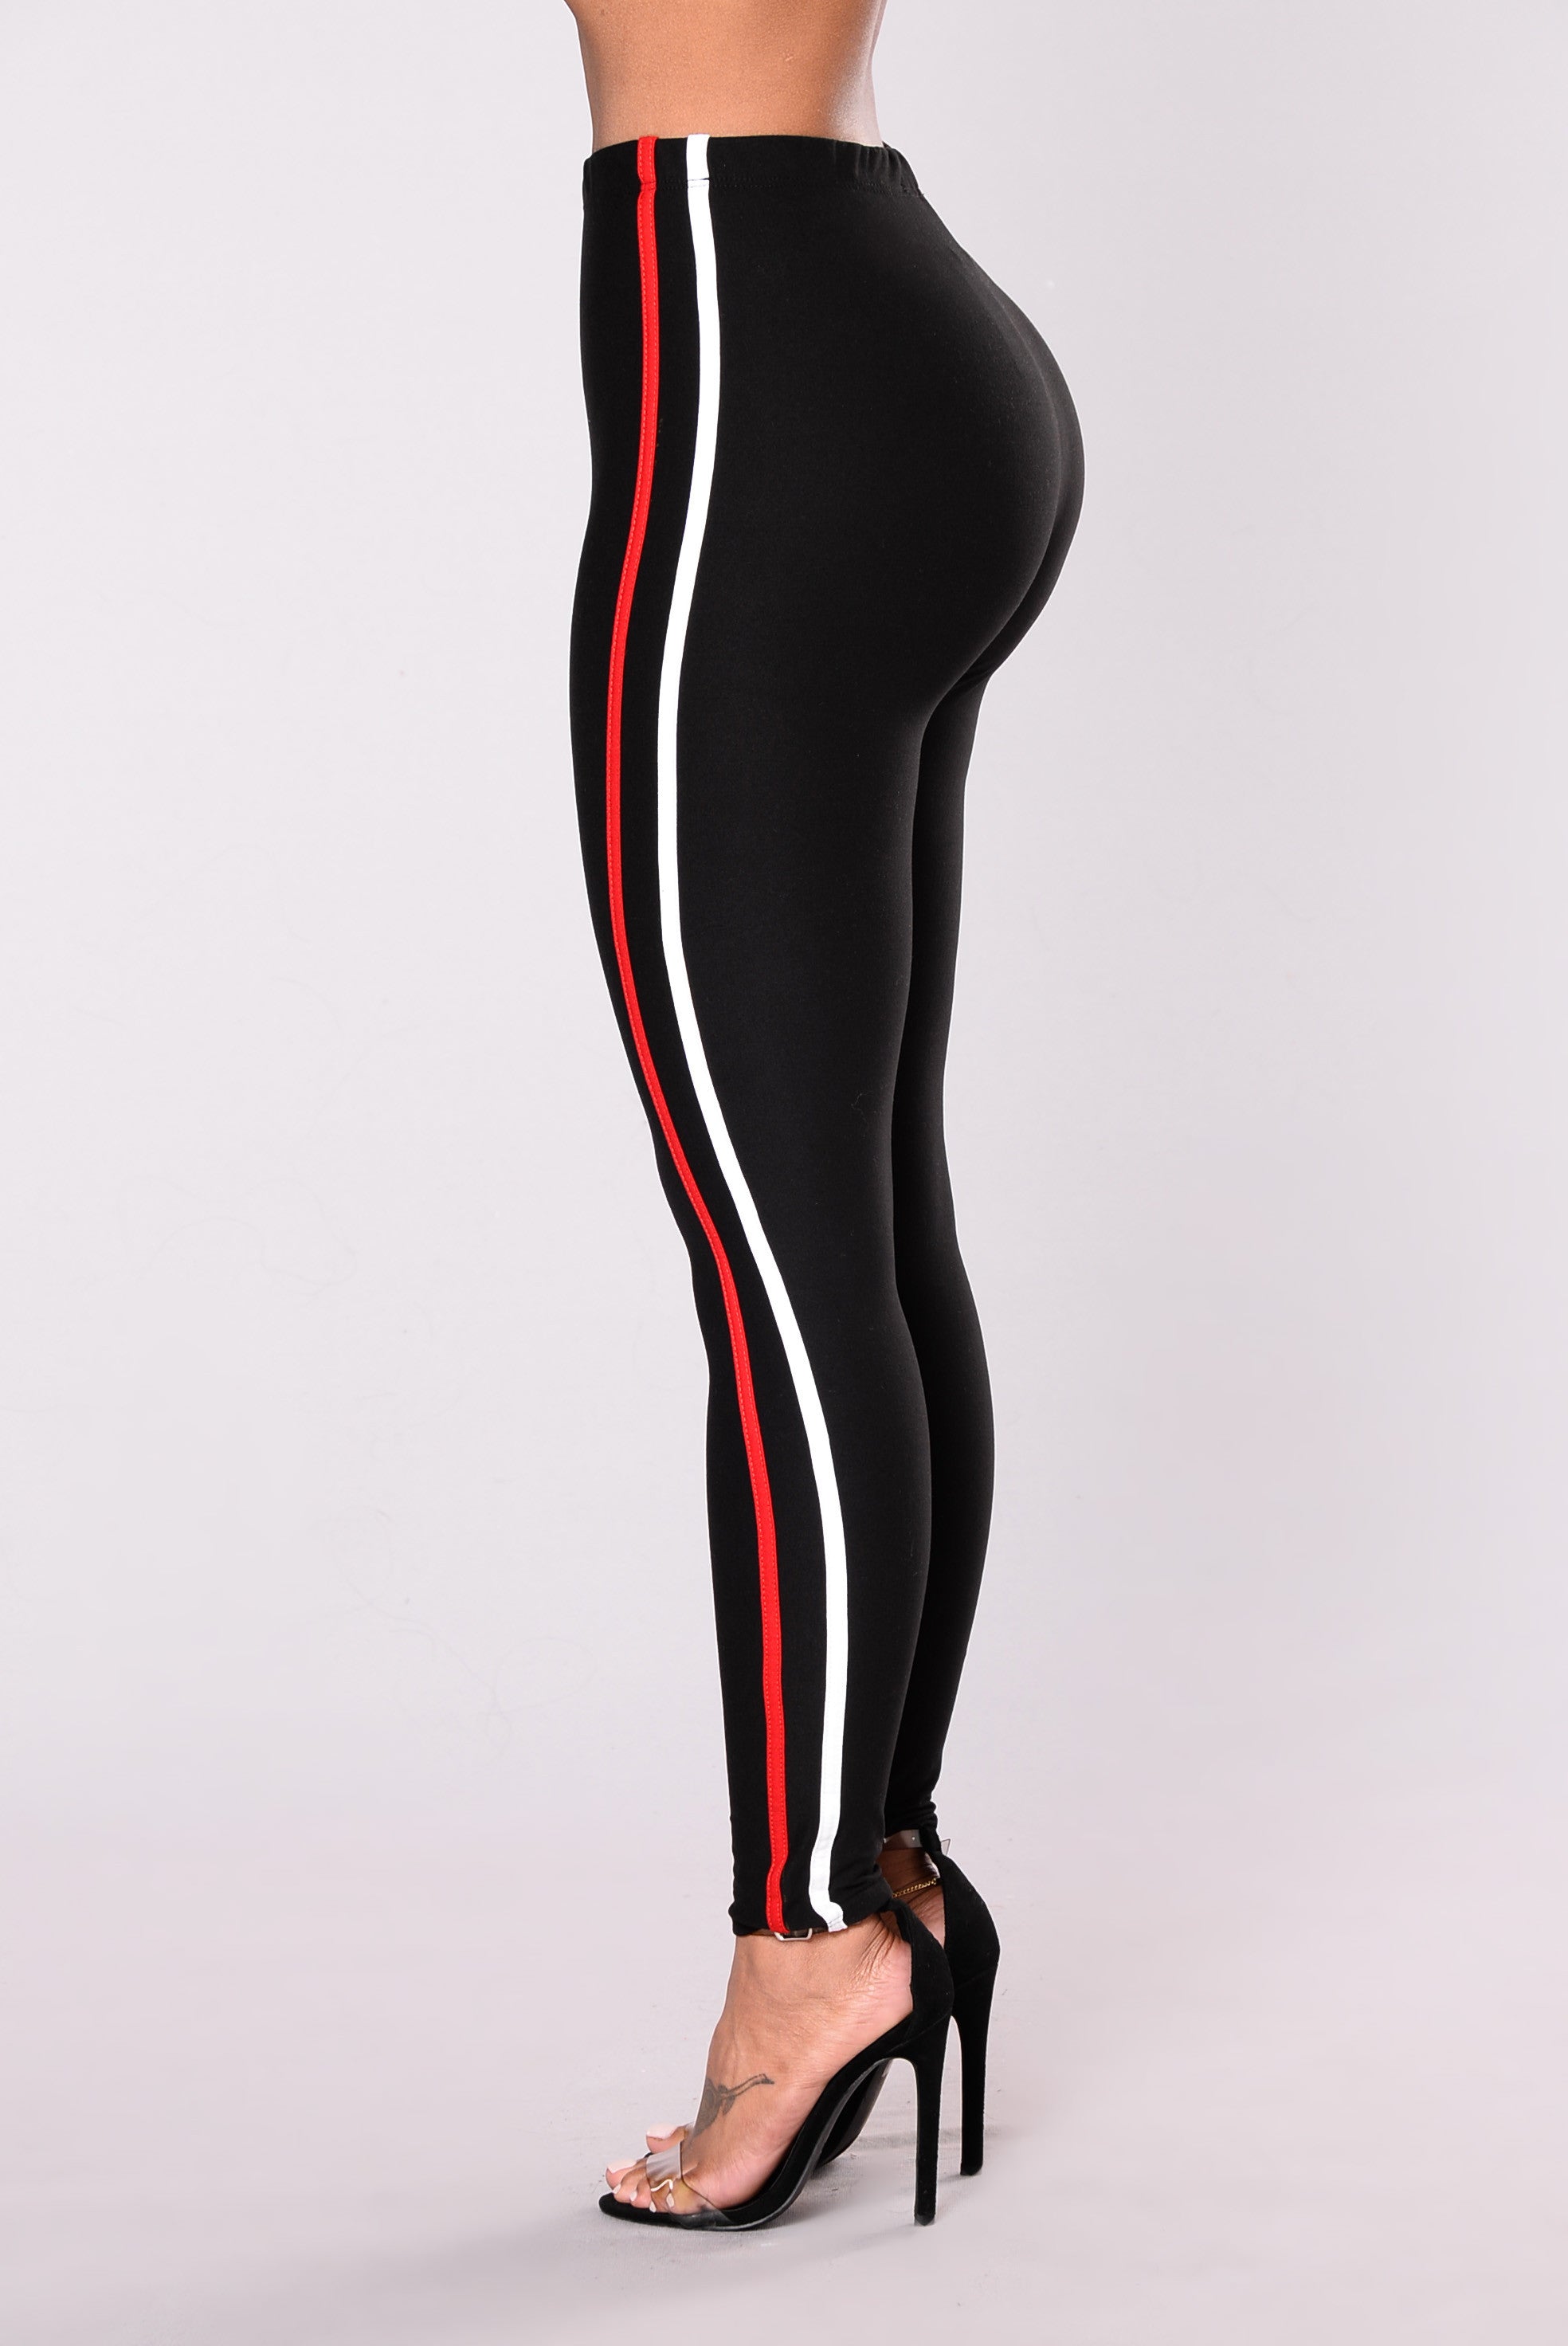 The New Classic Striped Pants - Black, Fashion Nova, Leggings